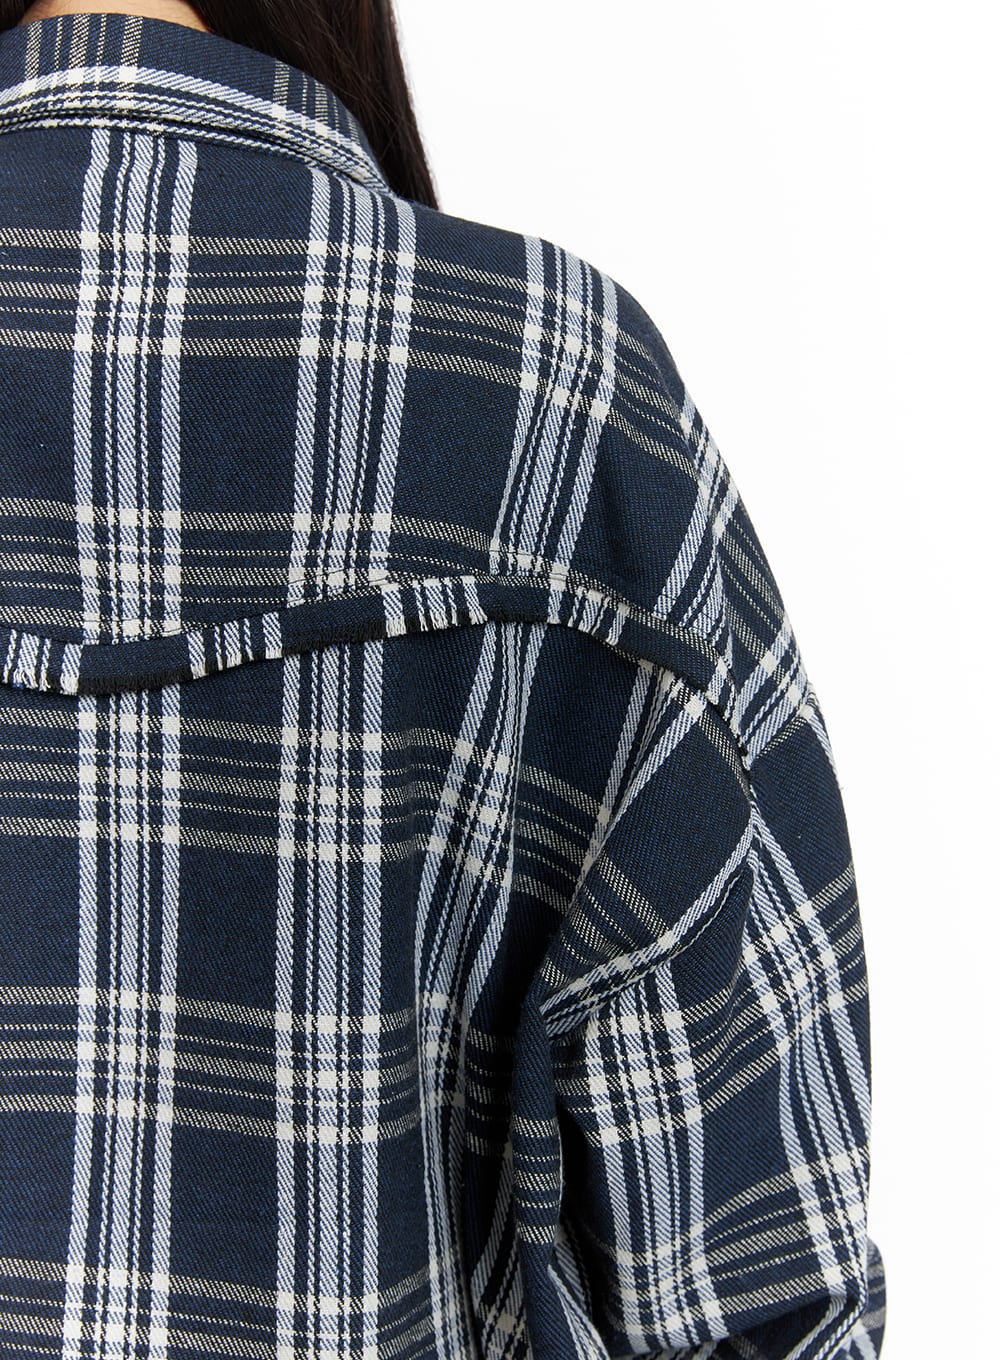 unisex-plaid-flannel-shirt-cm418